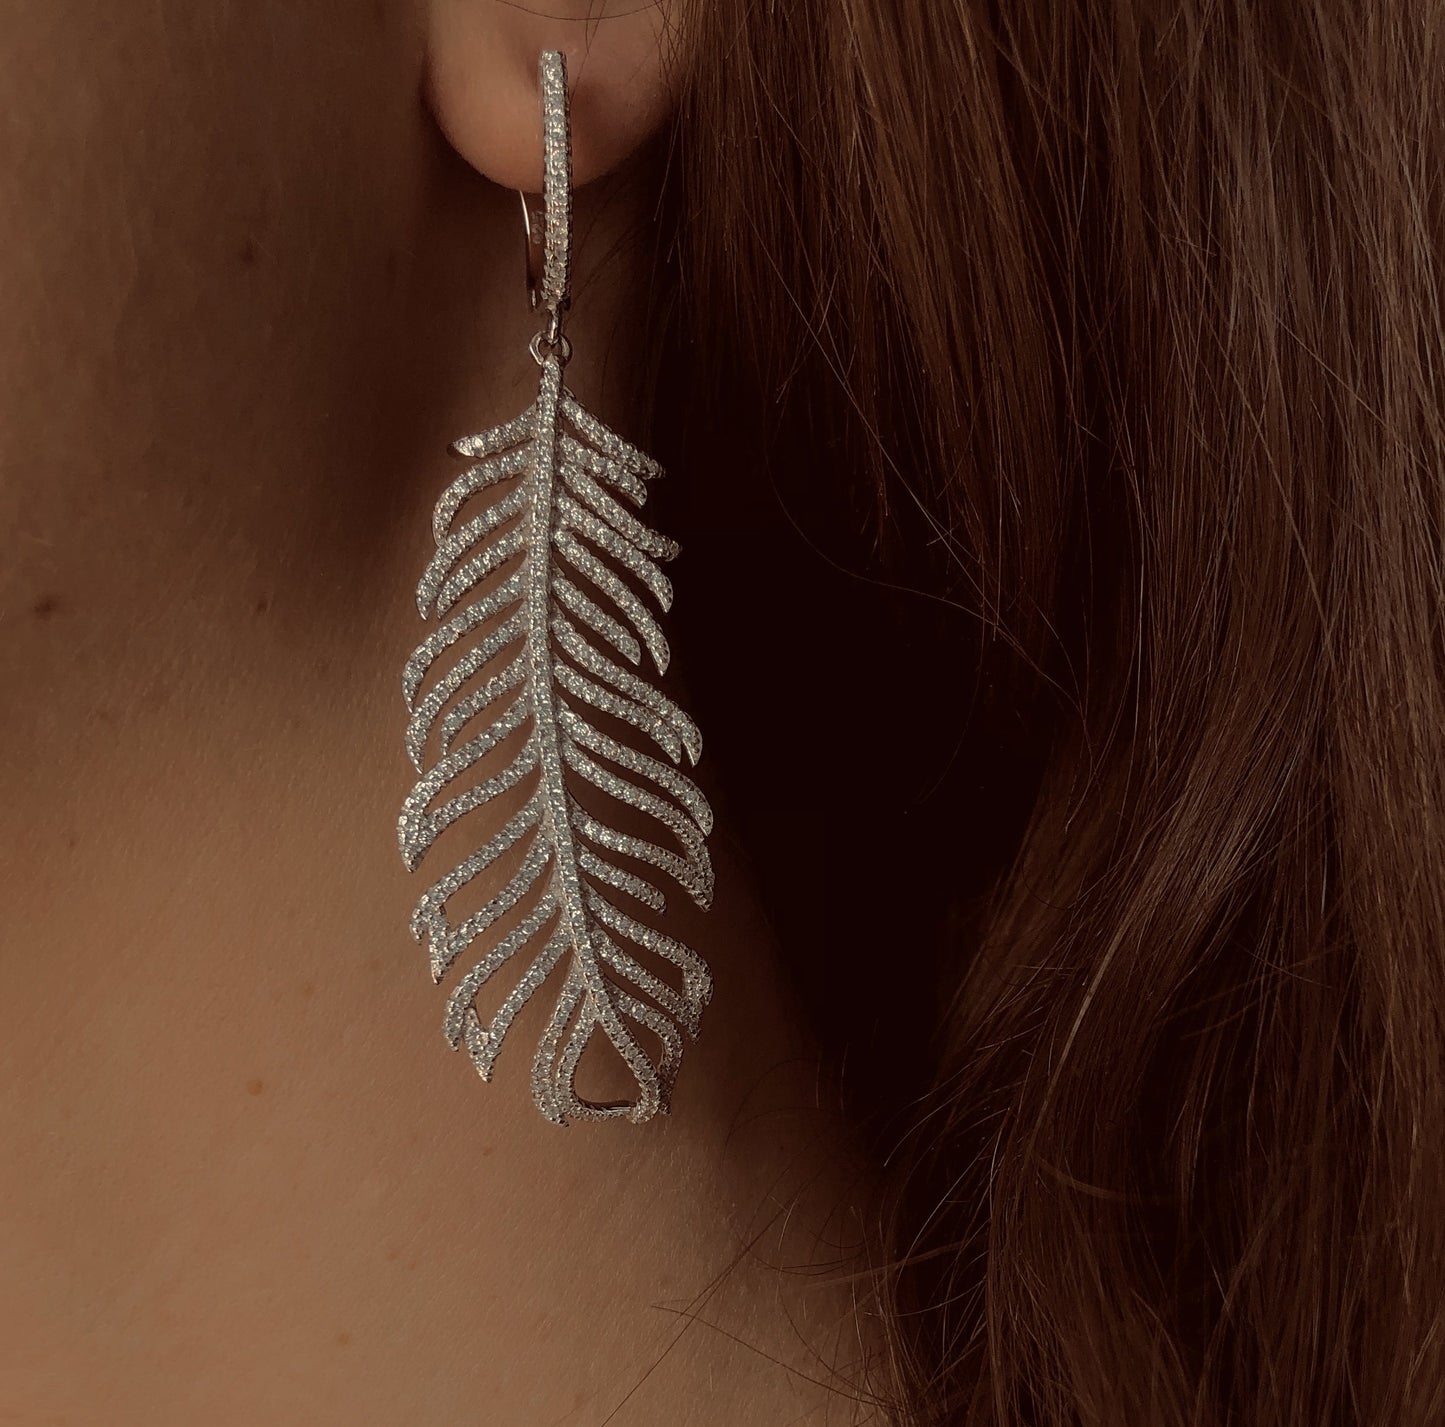 Les Favorites earrings